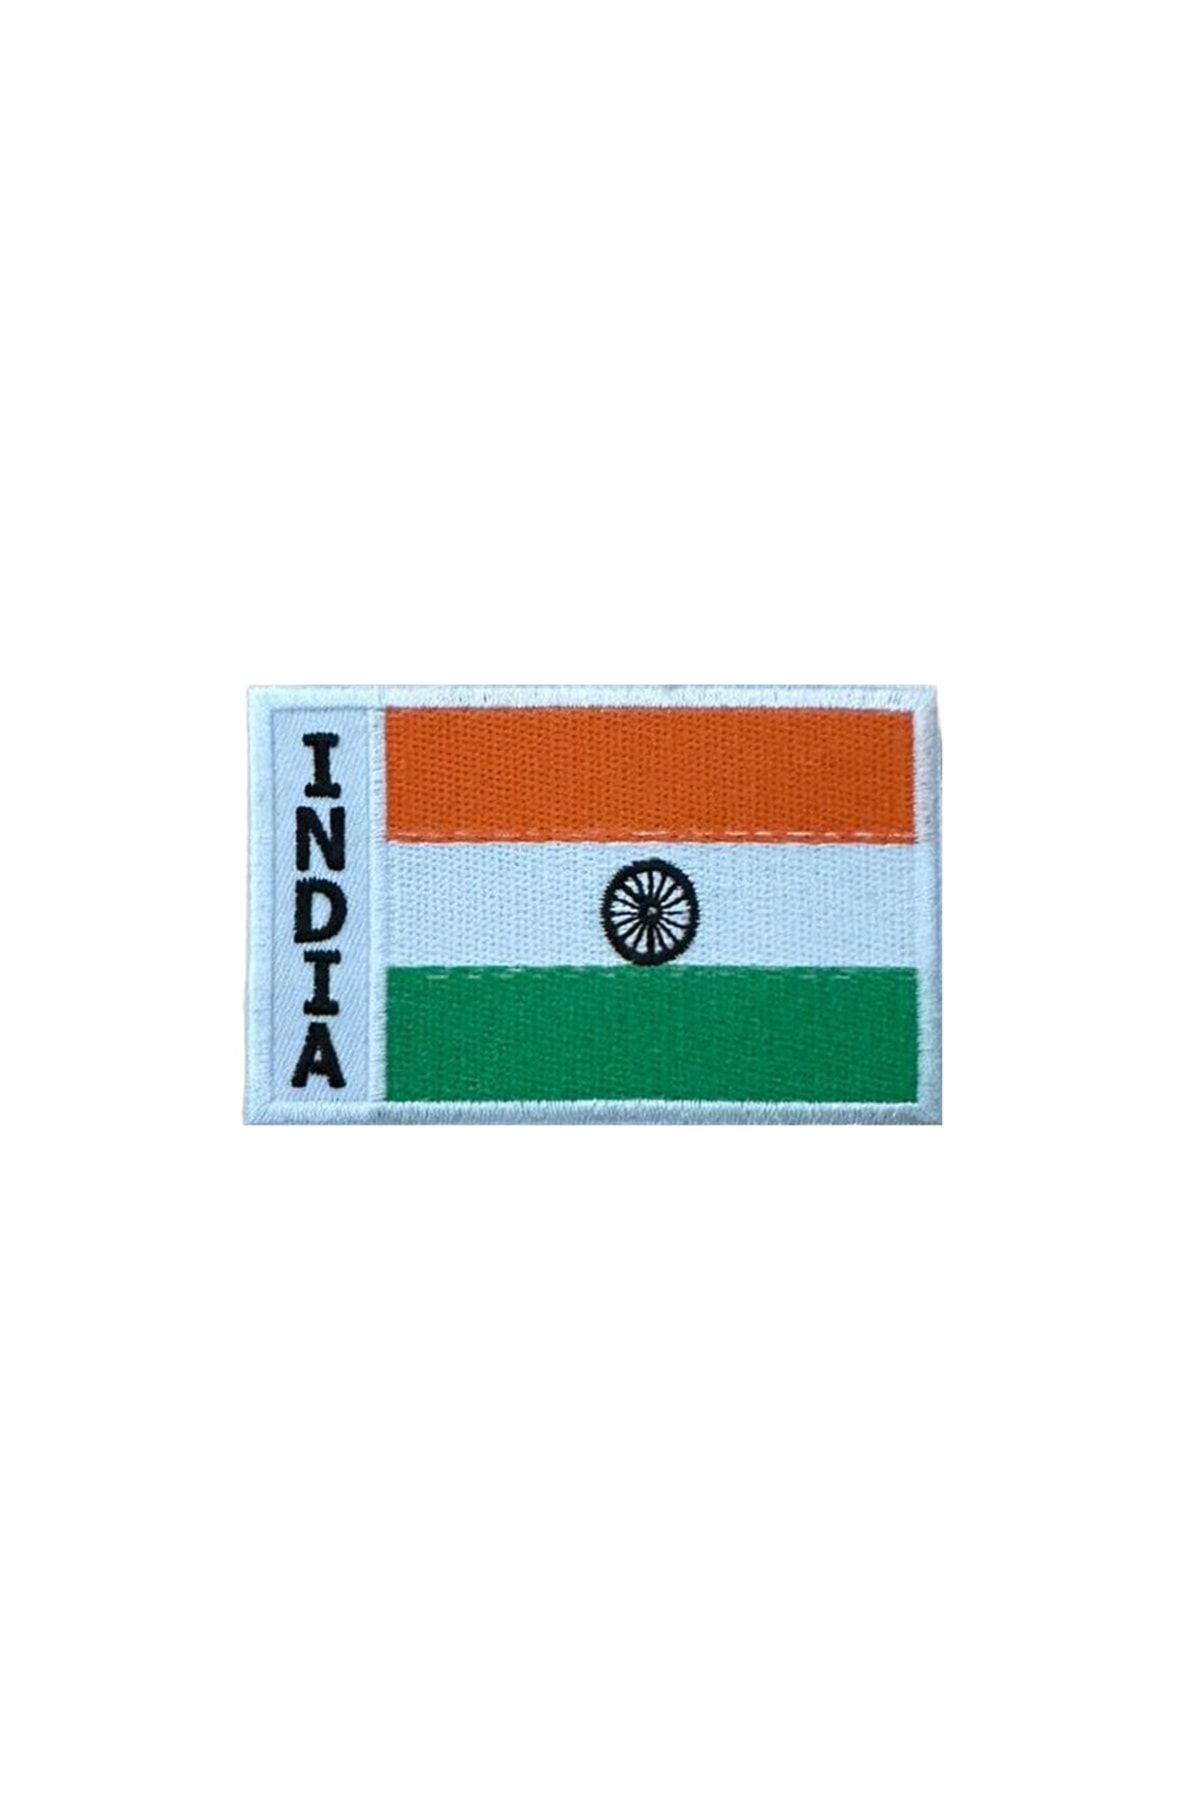 X-SHOP Hindistan Indıa Flag Patches Arma Peç Kot Yaması